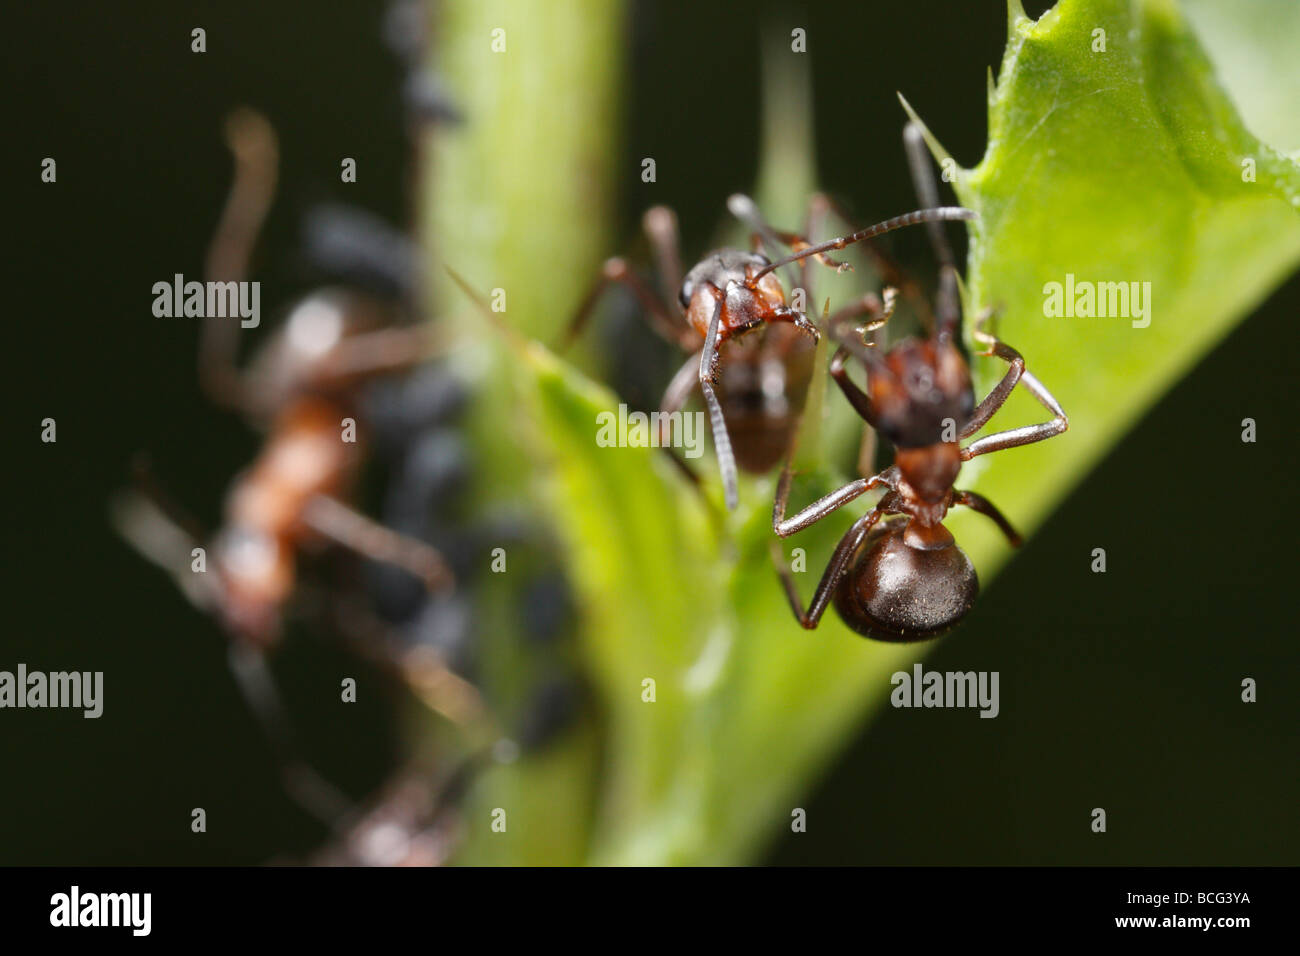 Dos caballos de hormigas (Formica rufa) en pose amenazadora. Foto de stock